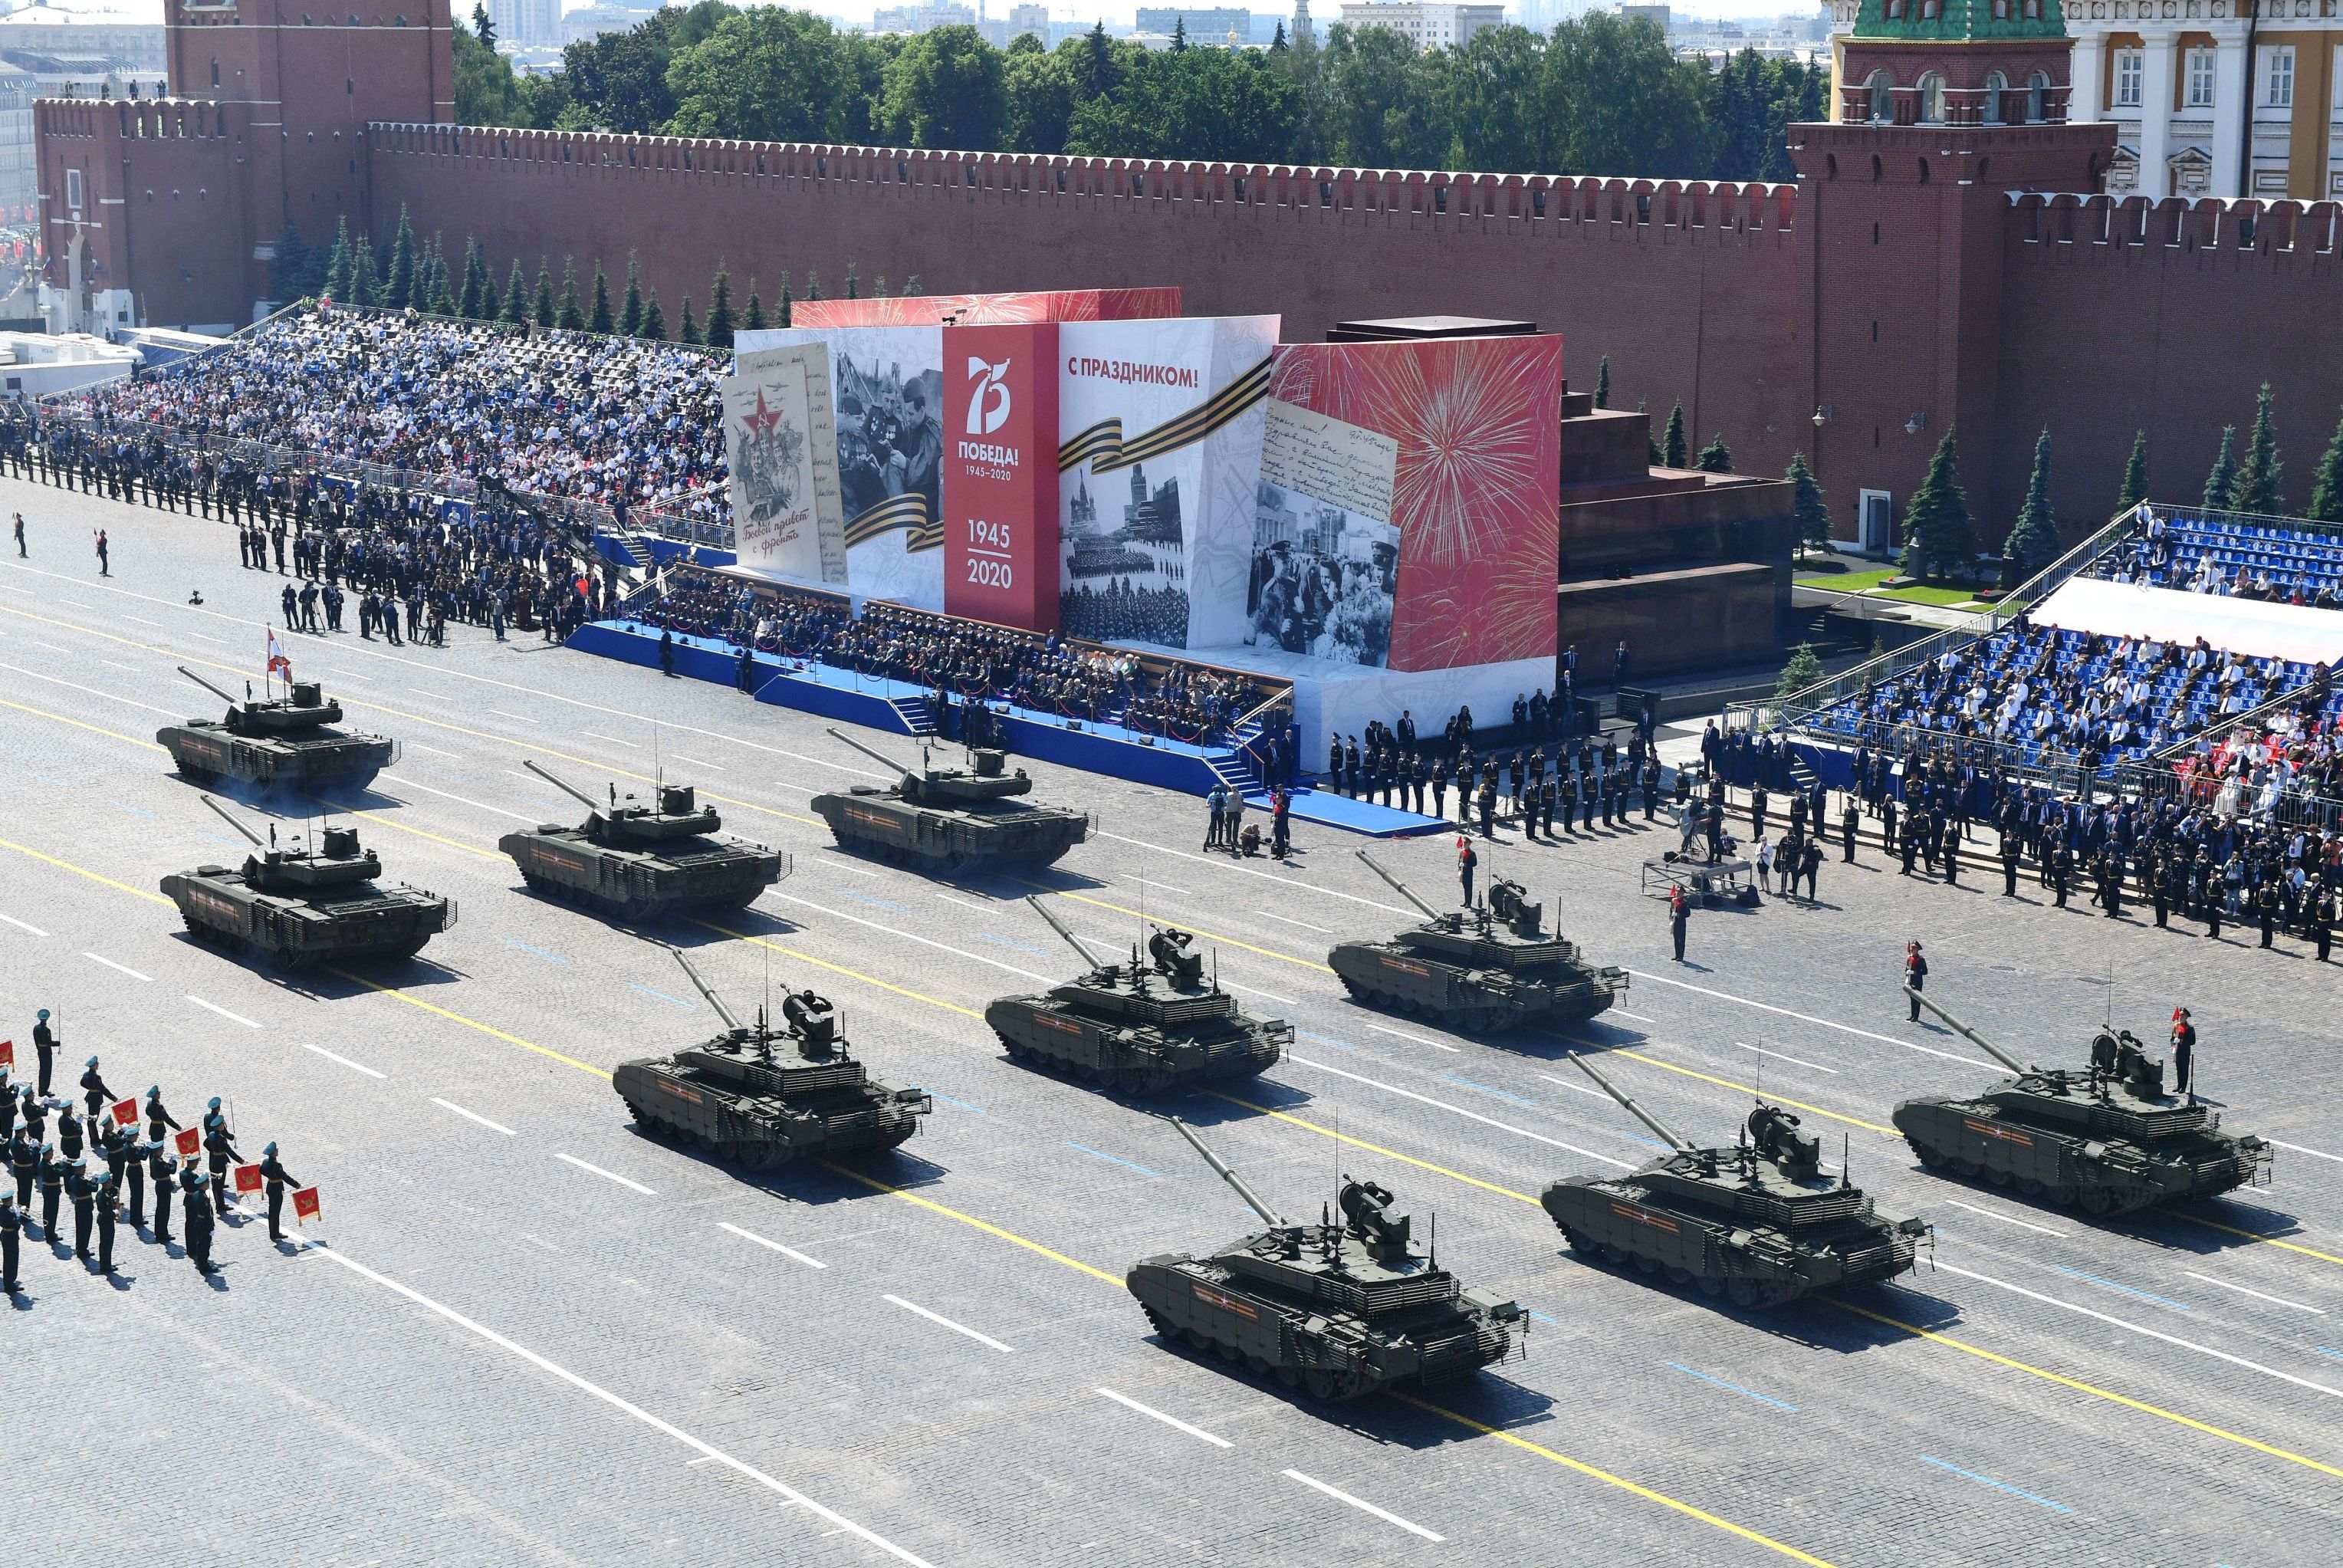 Танки Т-14 "Армата" и Т-90М "Прорыв-3" на Красной площади во время Парада в честь 75-летия Победы в ВОВ